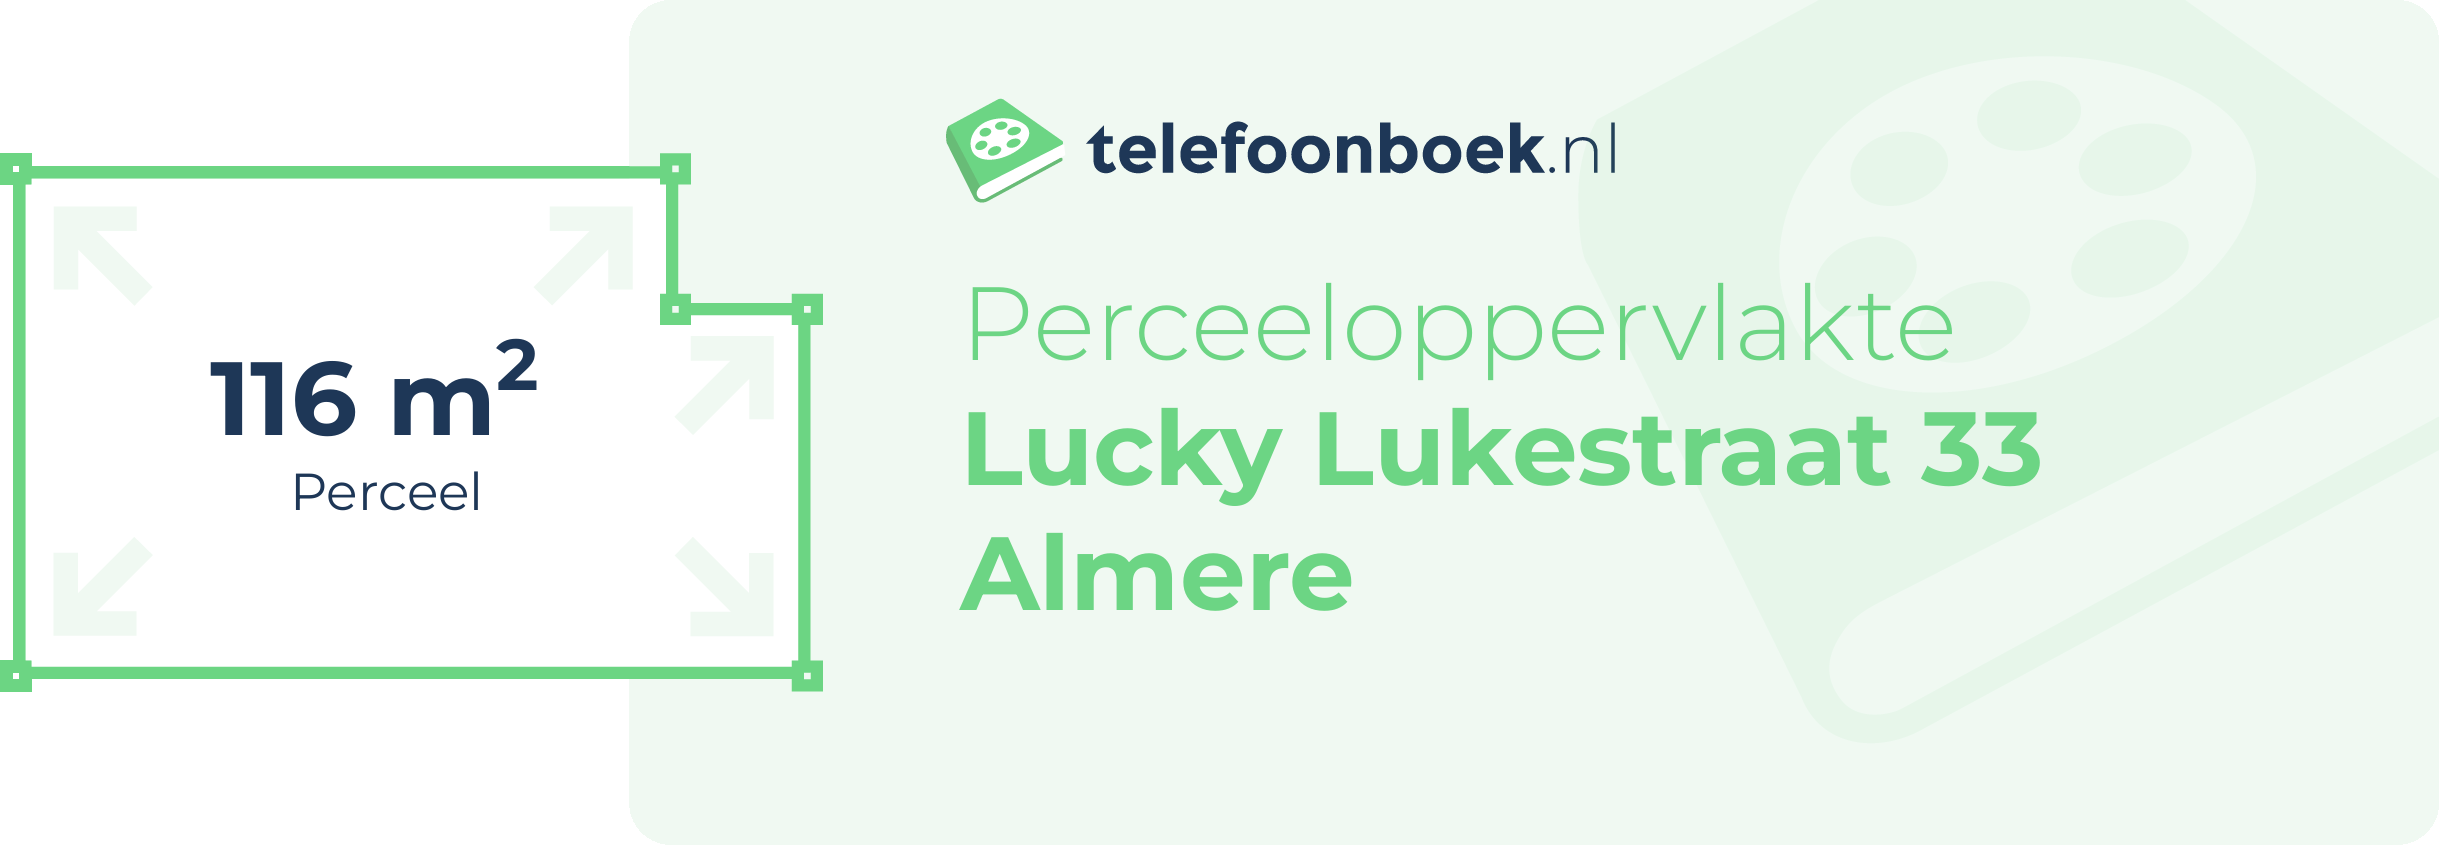 Perceeloppervlakte Lucky Lukestraat 33 Almere